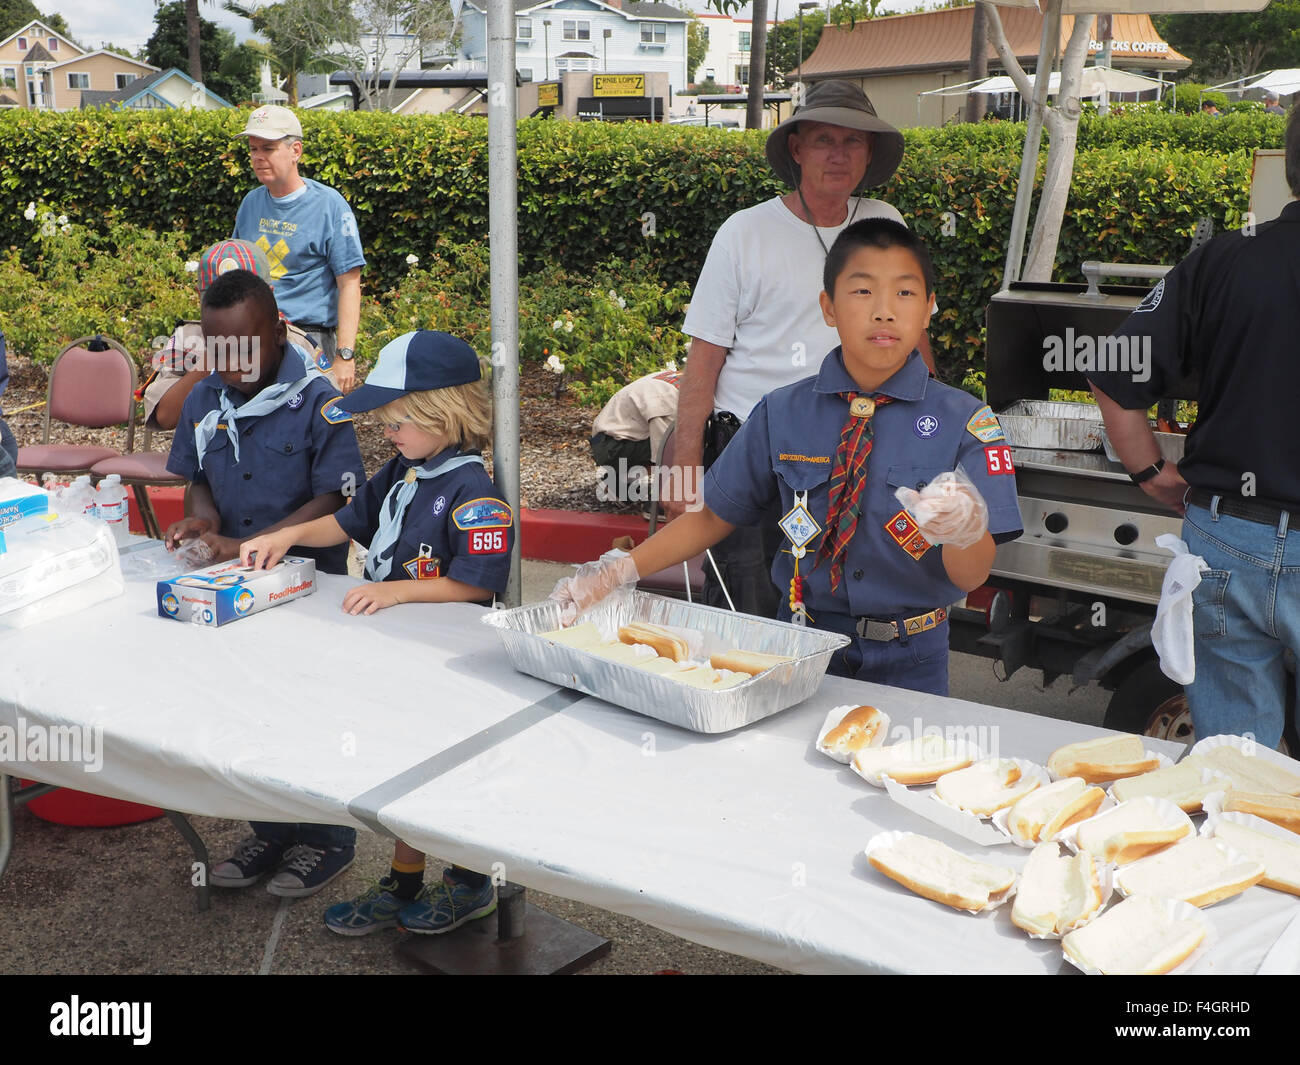 Black, White, and Oriental boyscouts prepare hot dogs for police fair. Redondo Beach, CA. Stock Photo